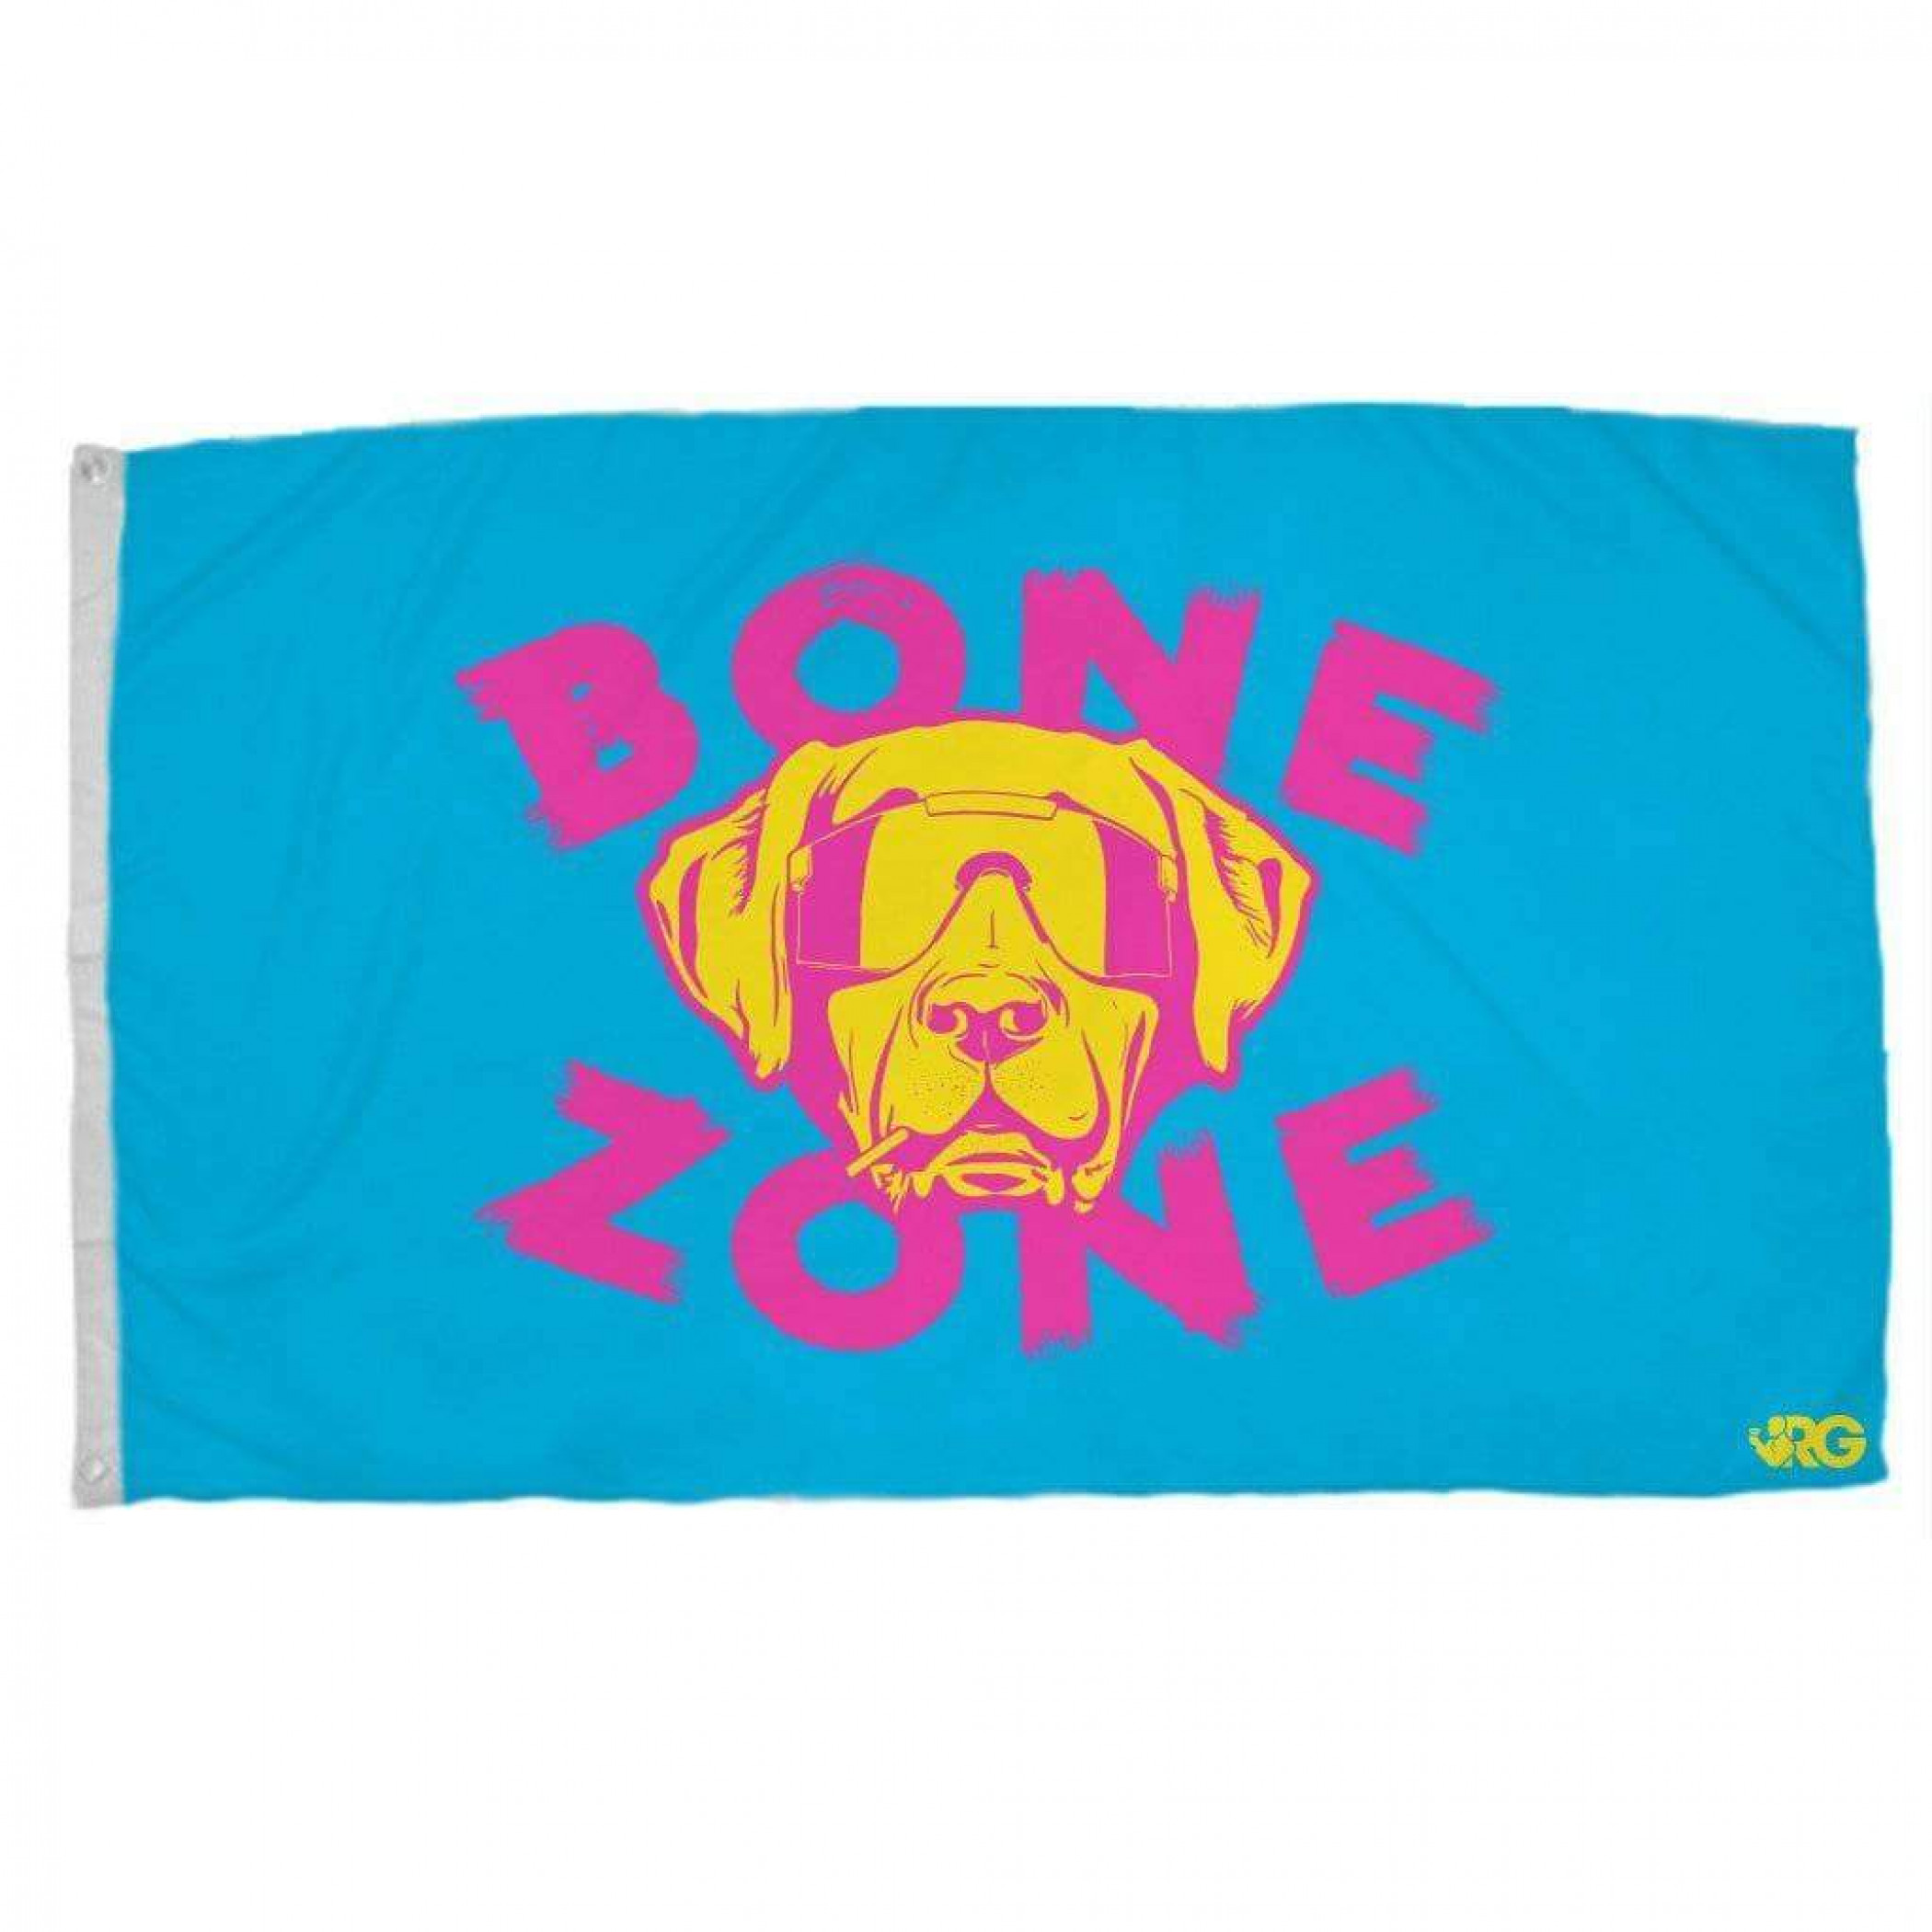 Bone Zone Flag